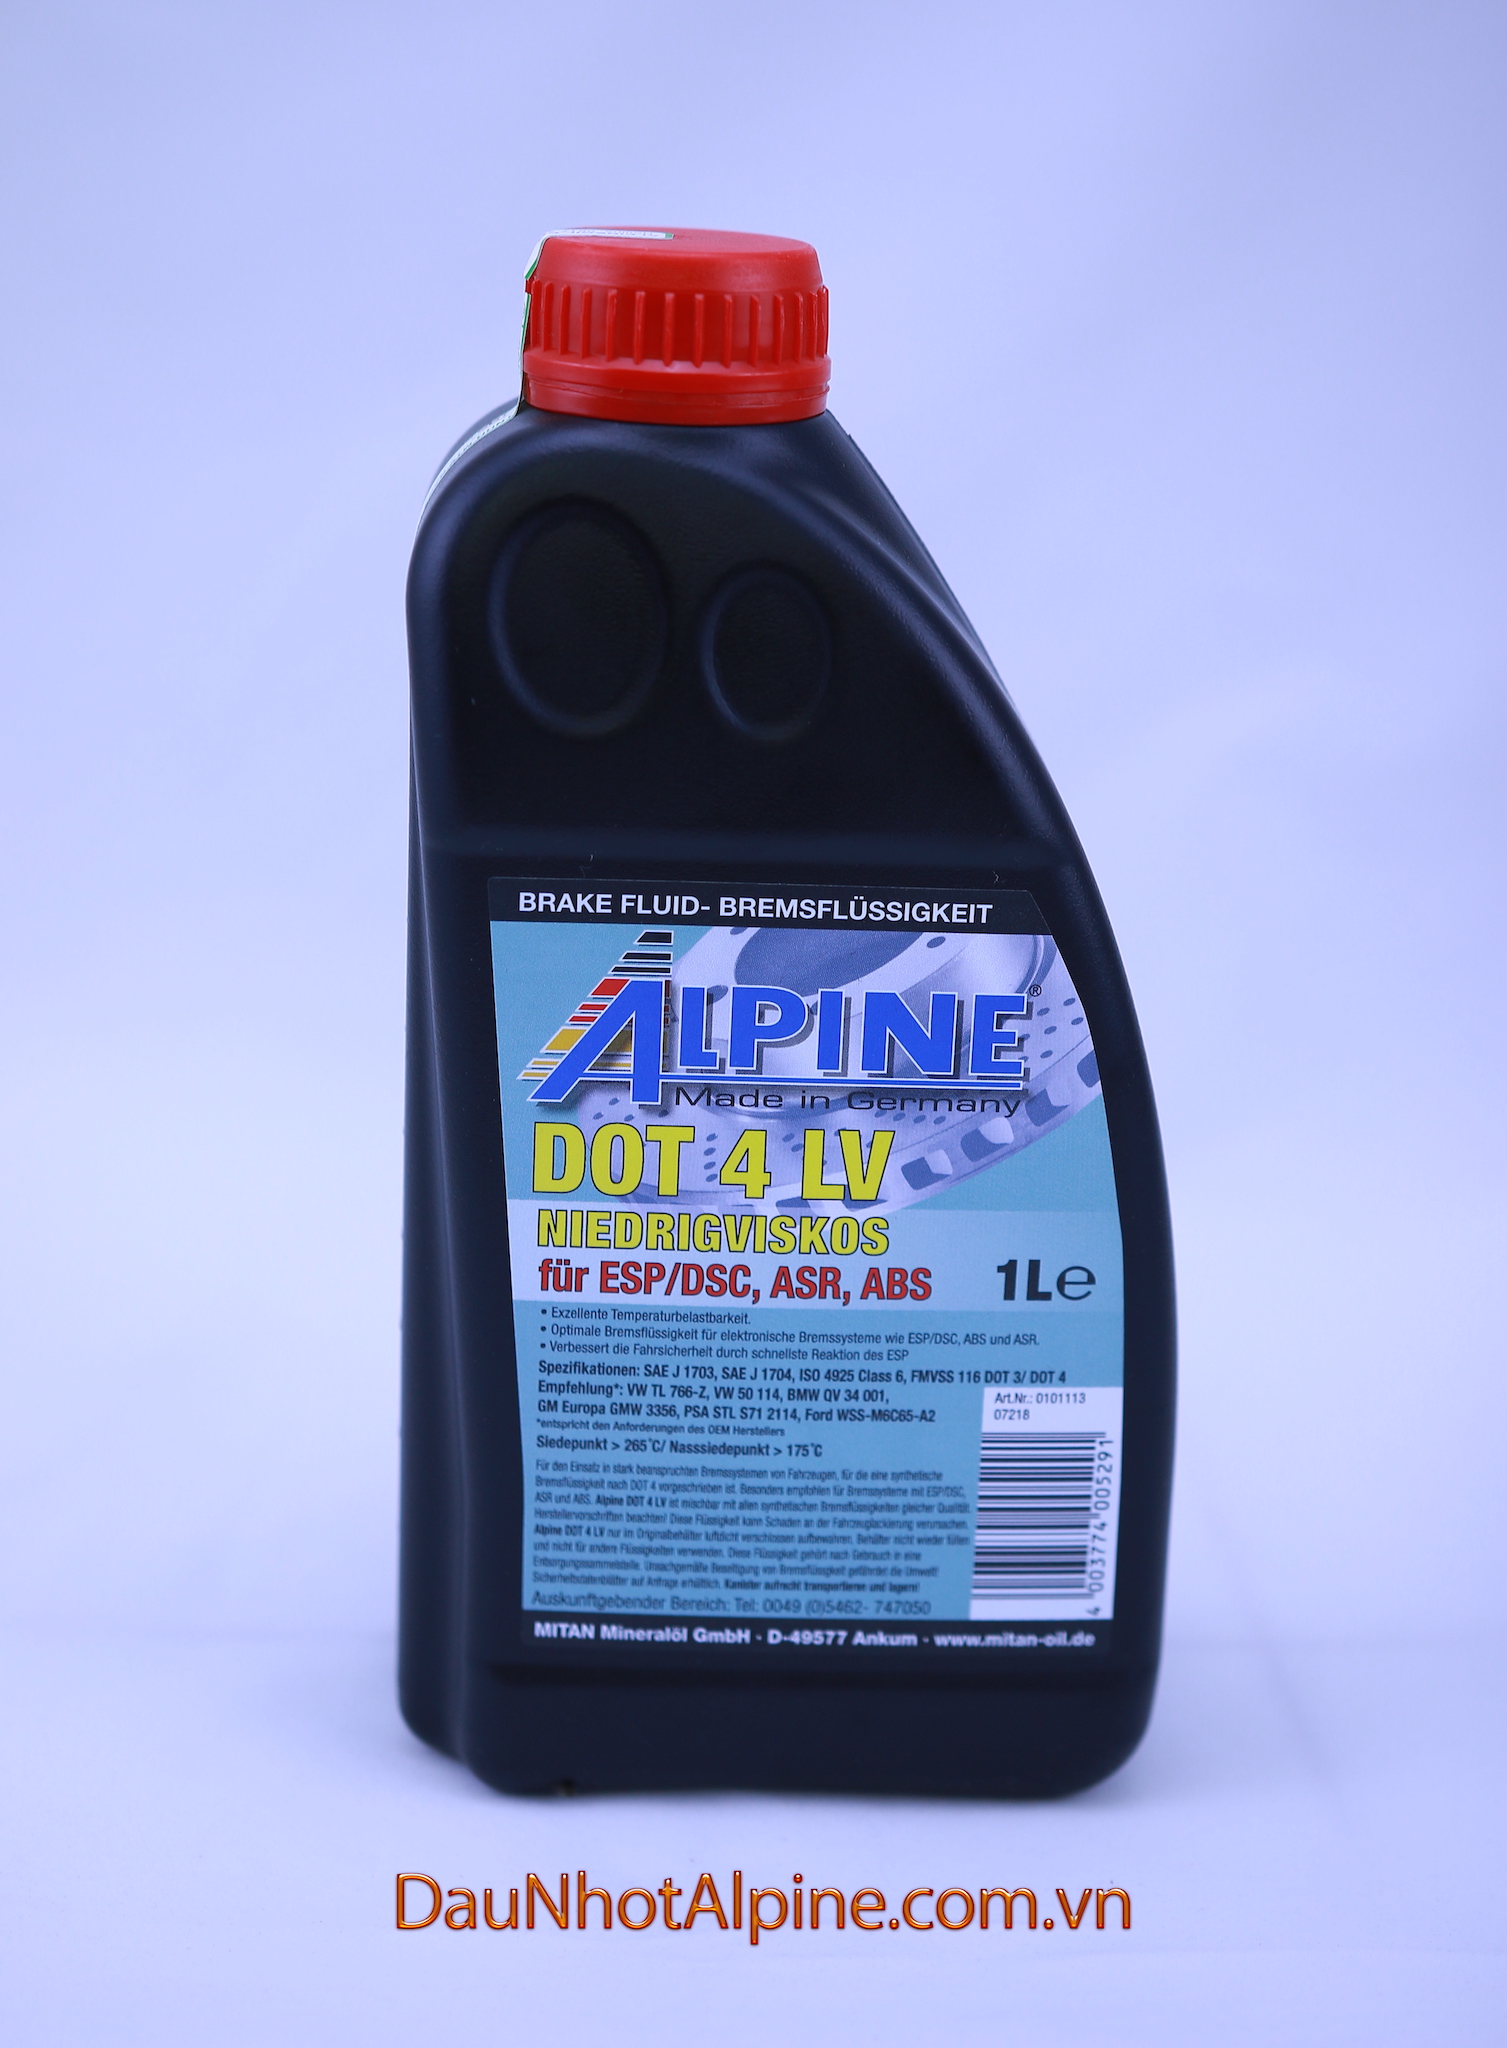 Dầu phanh xe dầu thắng ALPINE DOT 4 LV bình 1 lít